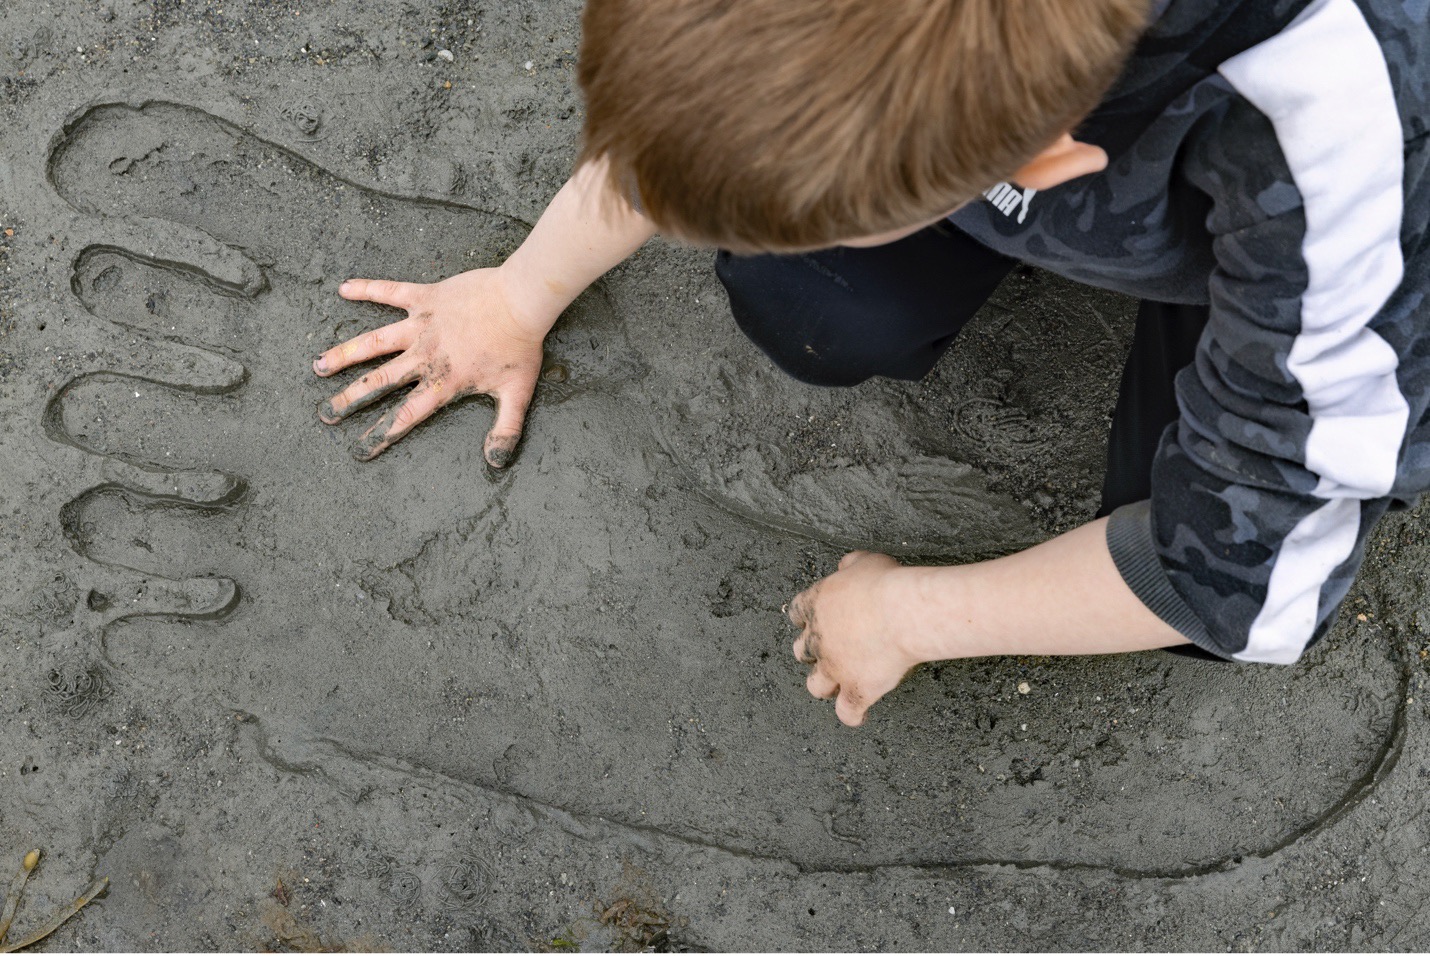 et kjempestor i sanden, en gutt legger hånden sin i sporet